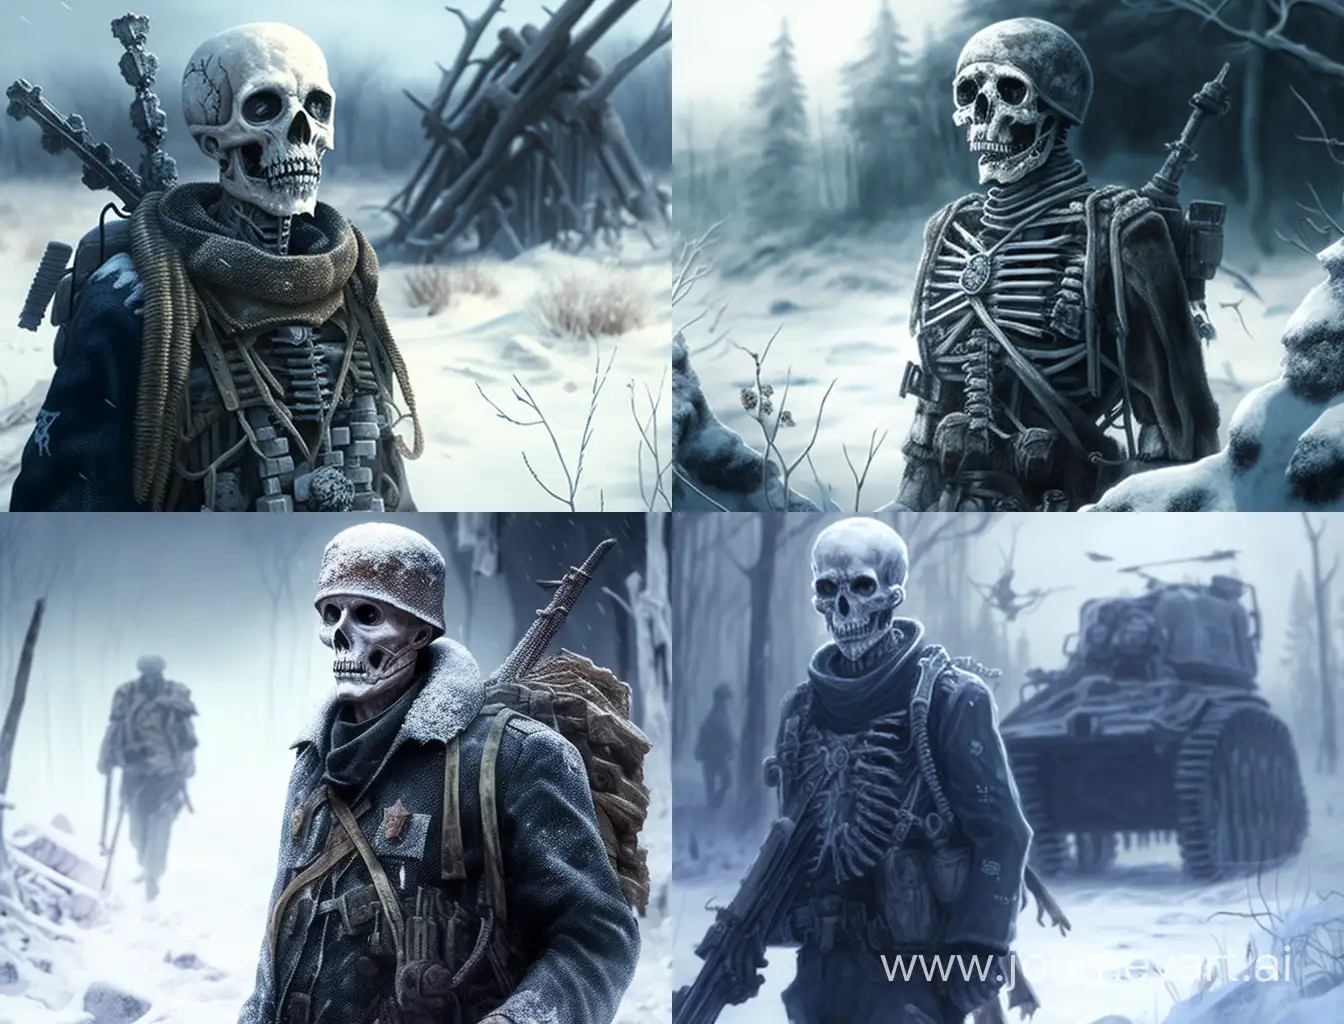 ис-4,зима,немцы,солдаты,скелеты,война,день